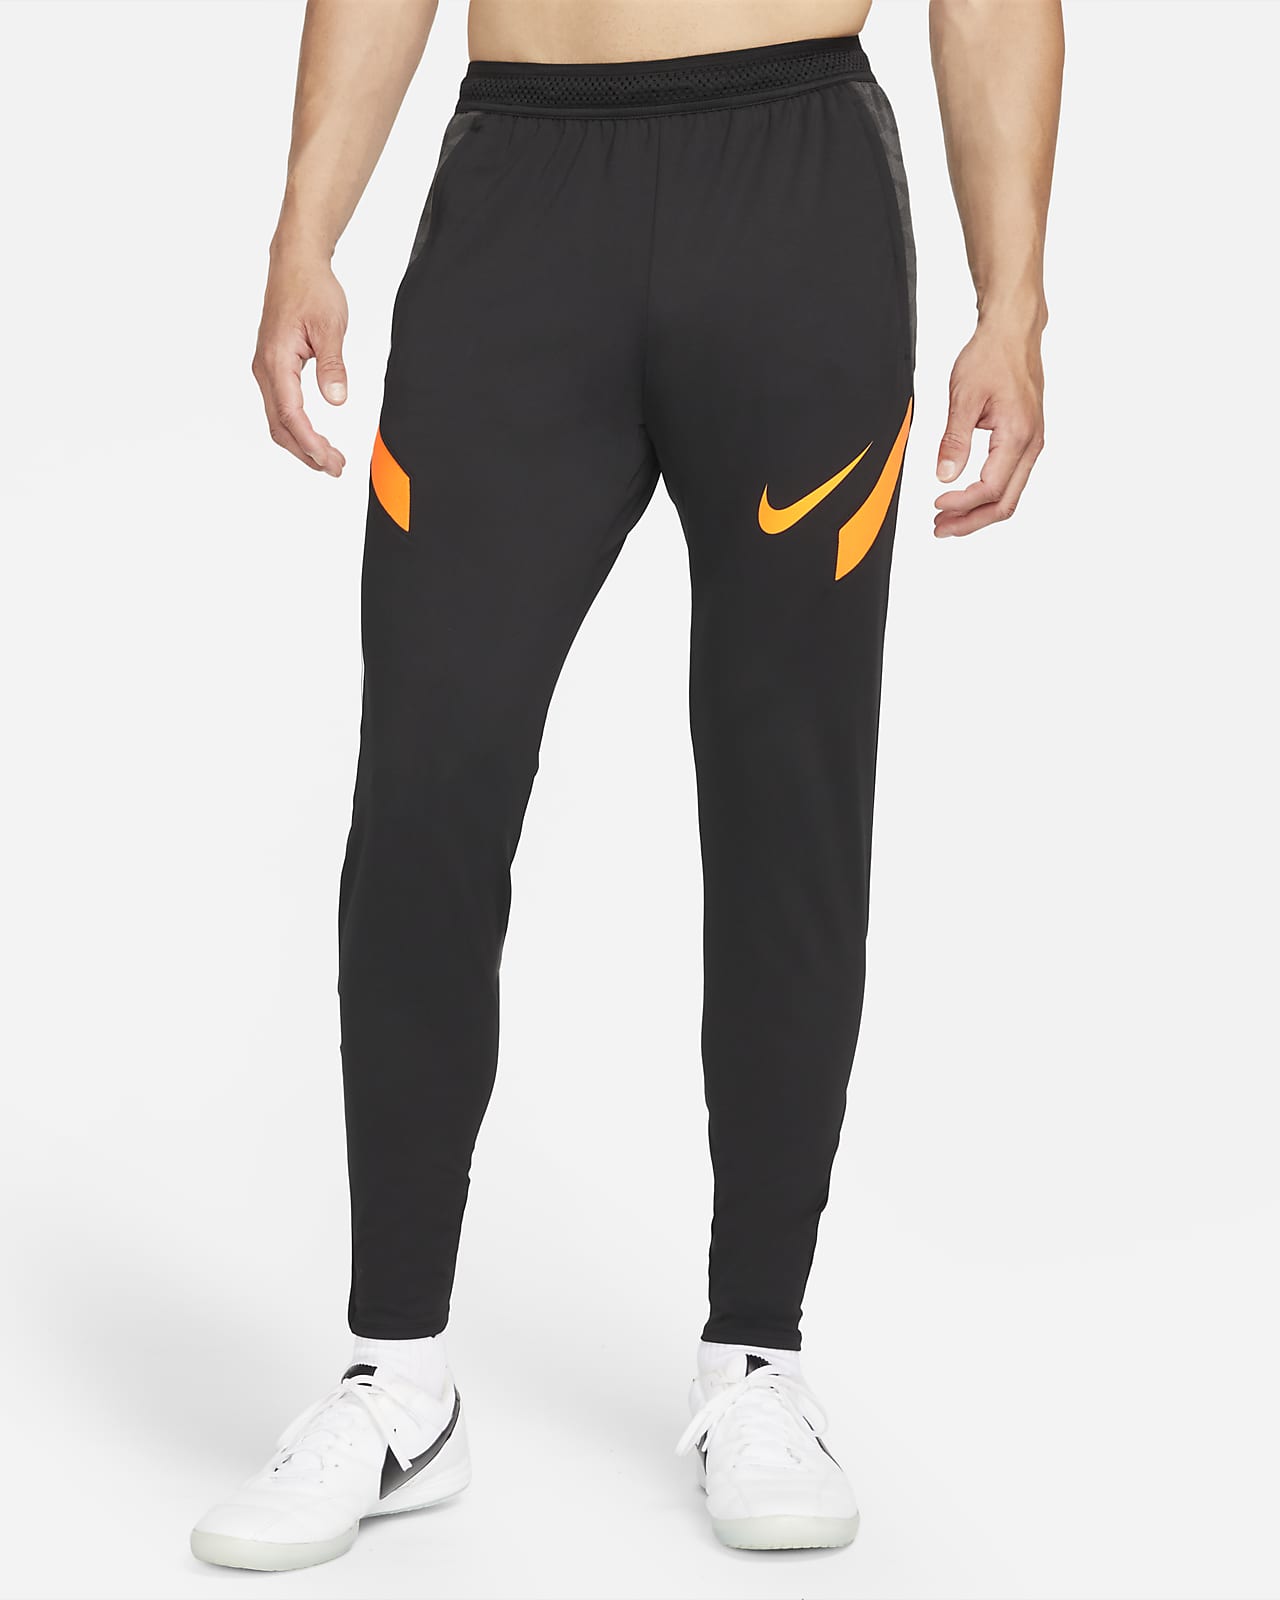 Мужские футбольные брюки Nike Dri-FIT Strike